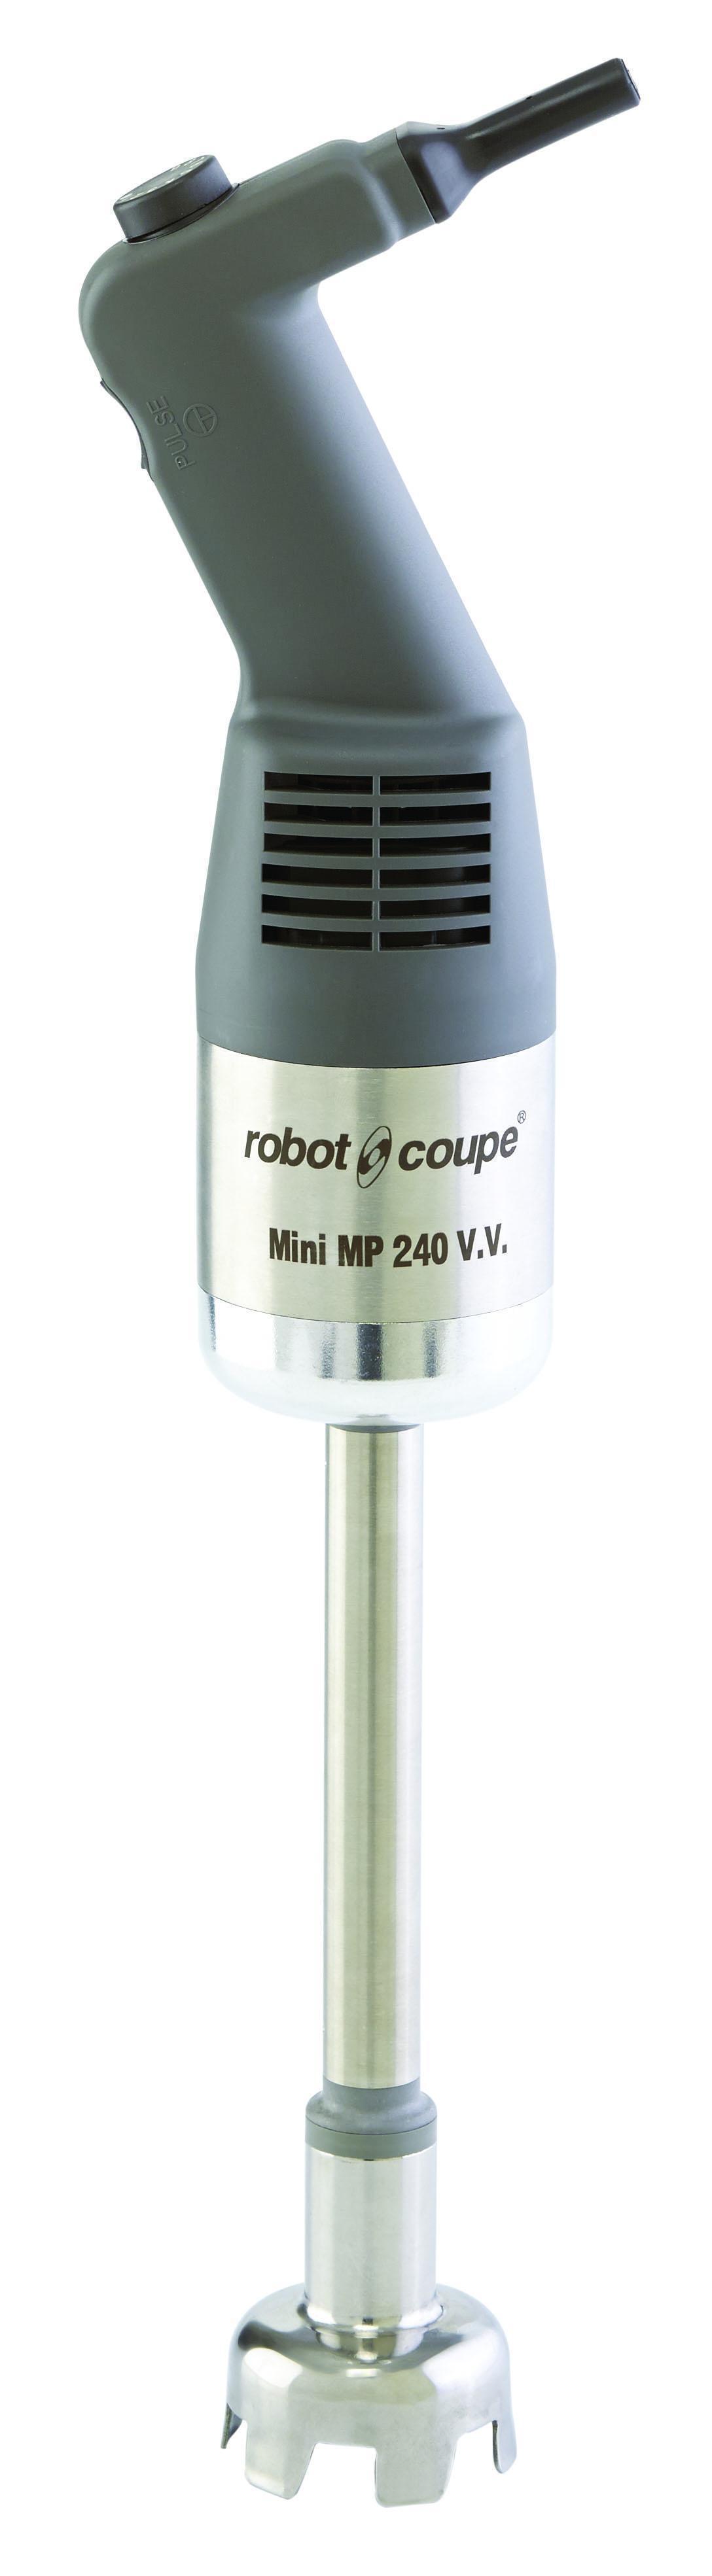 Миксер robot coupe mini mp